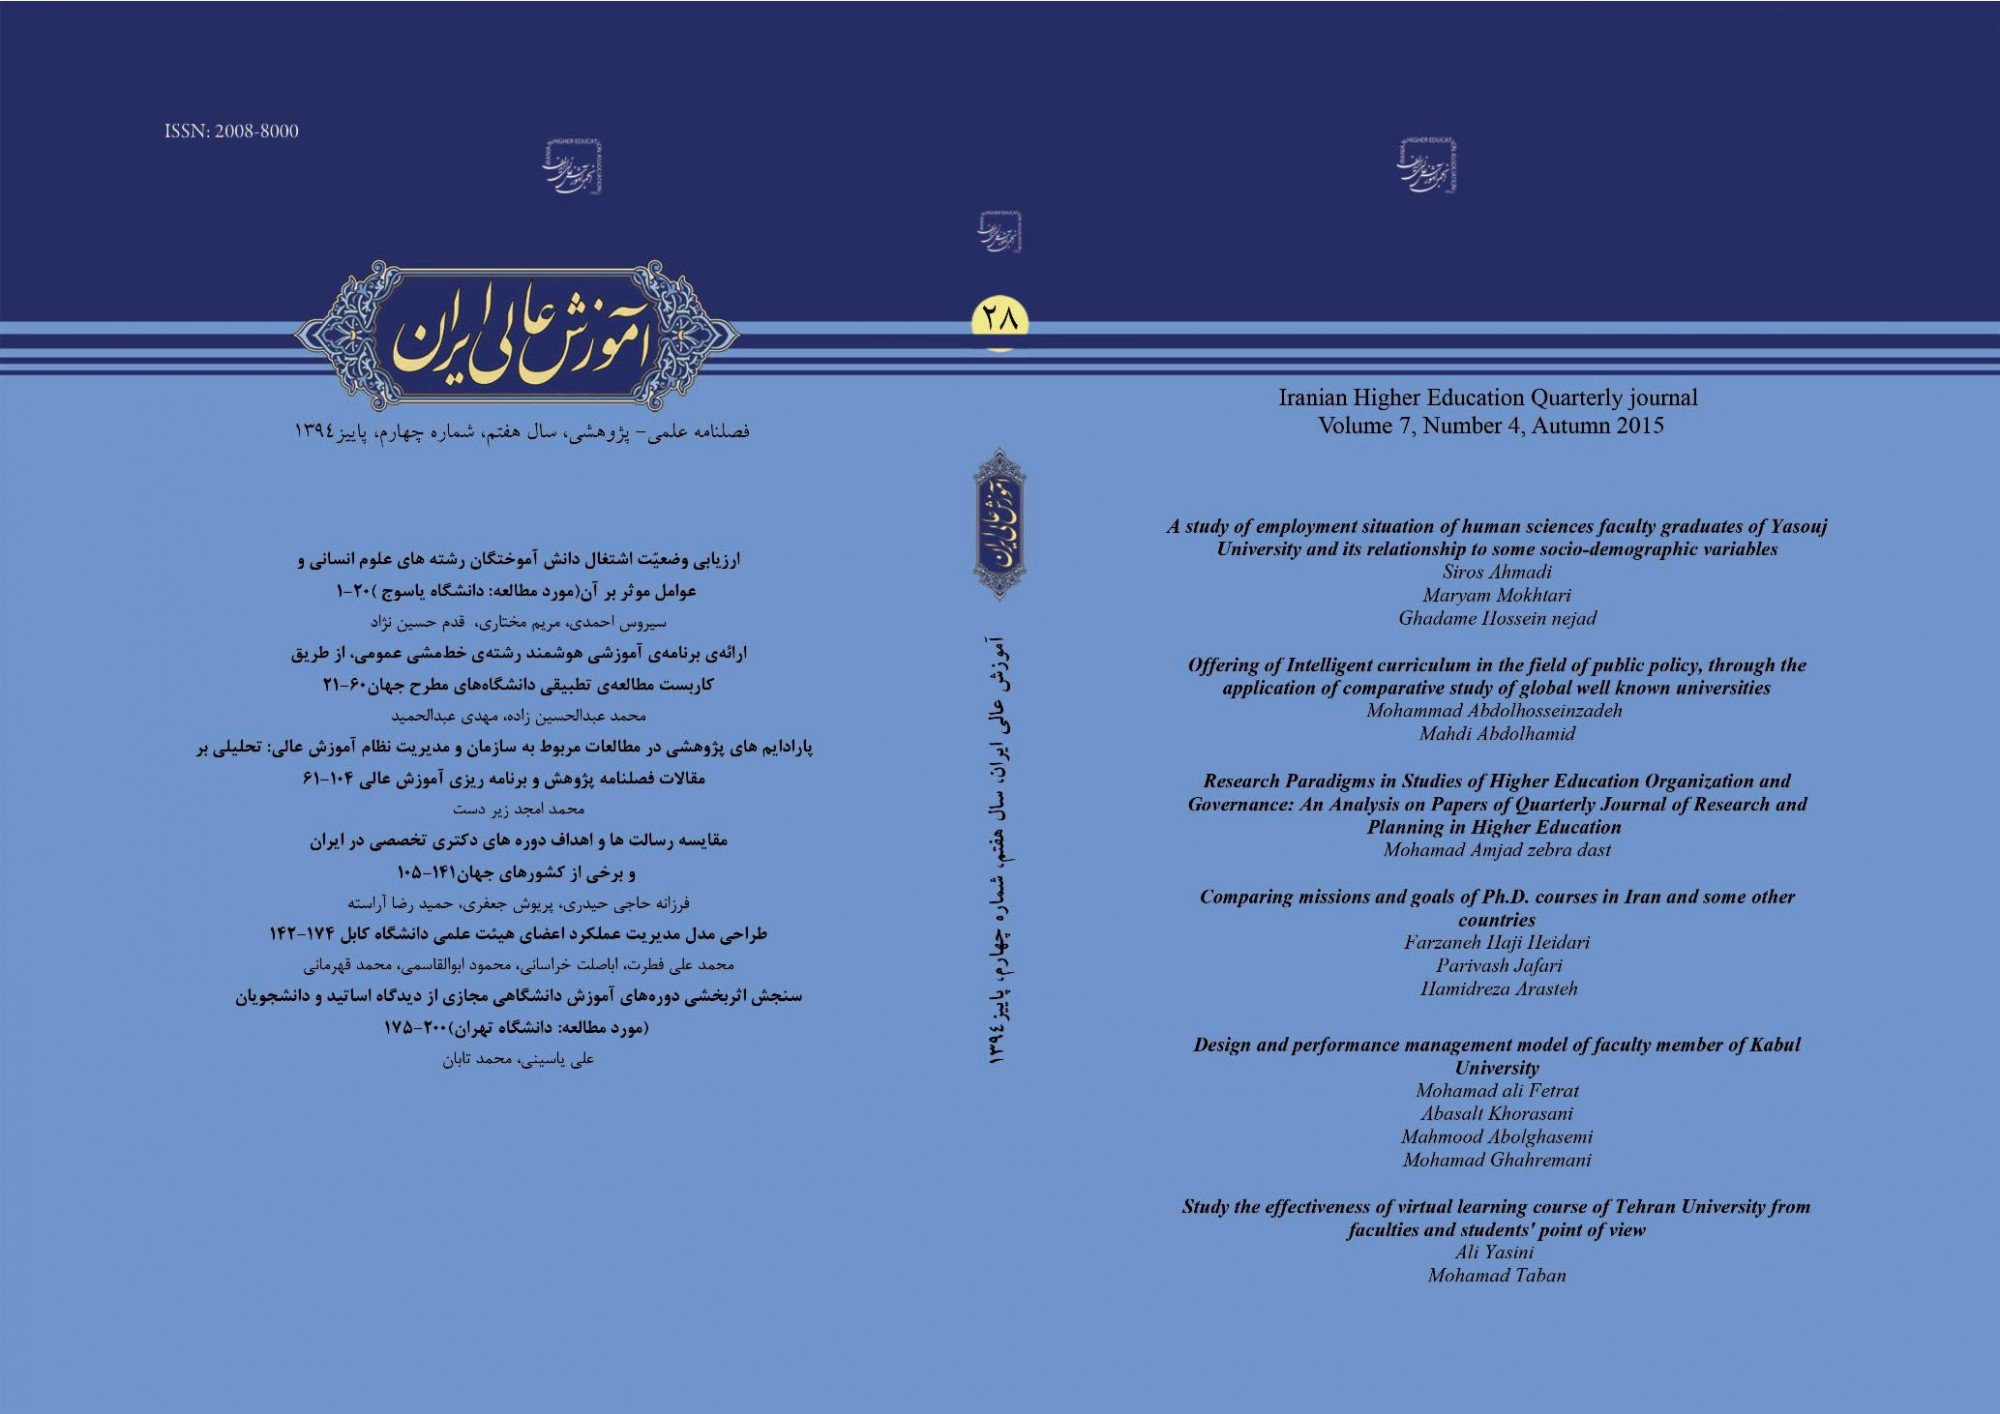 مقالات مجله آموزش عالی ایران، دوره 10، شماره 2 منتشر شد